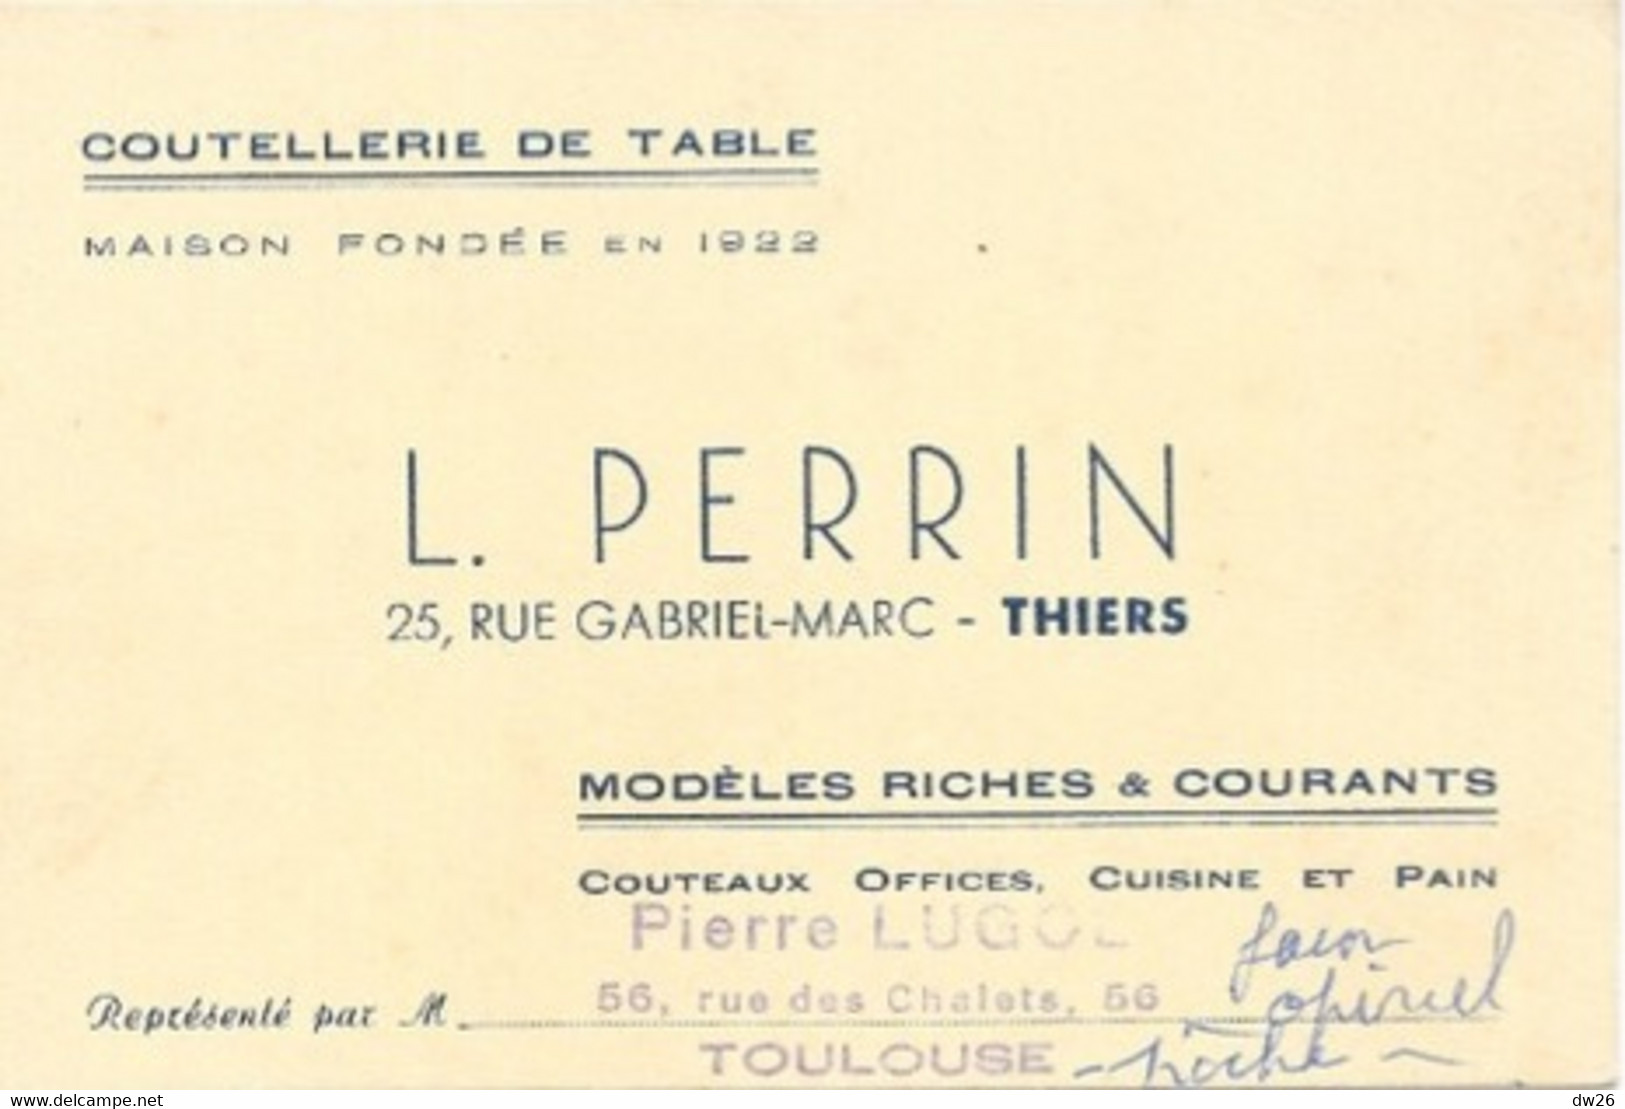 Carte De Visite - Coutellerie De Table L. Perrin, Thiers (couteaux Office, Cuisine) Représentant: Pierre Lugol - Visitenkarten